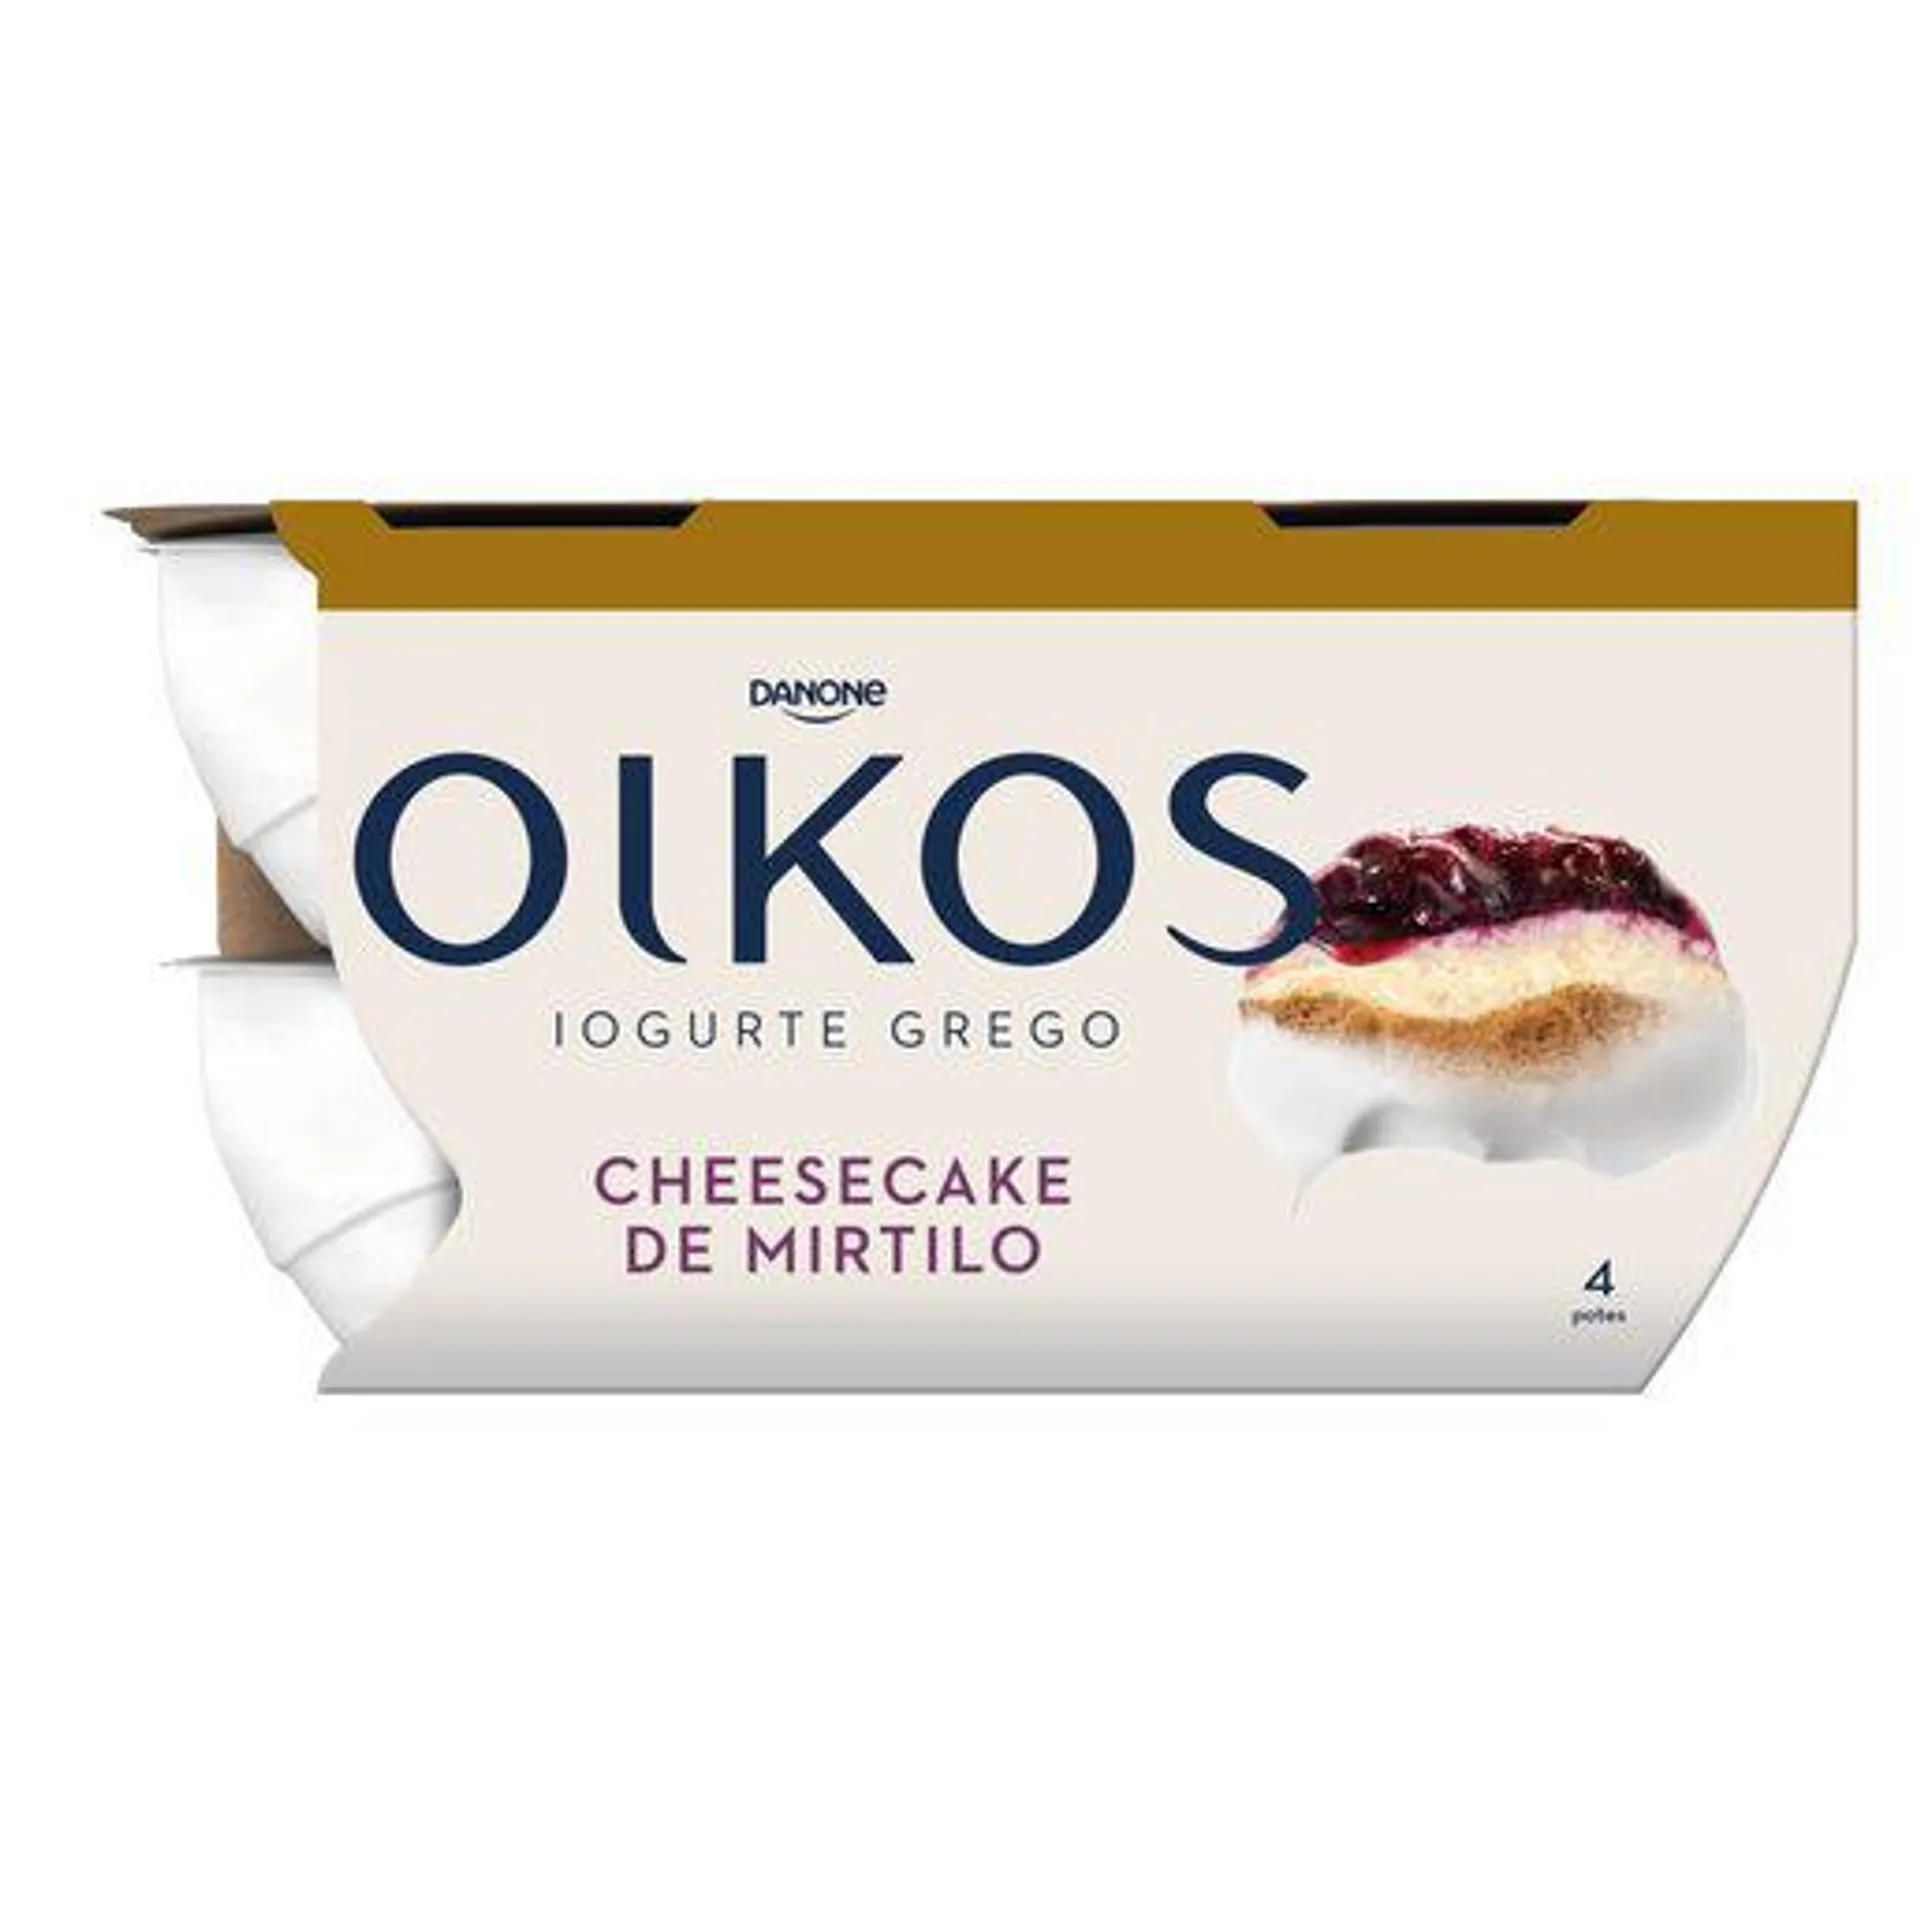 OIKOS Iogurte Cheesecake de Mirtilo 4x110 g